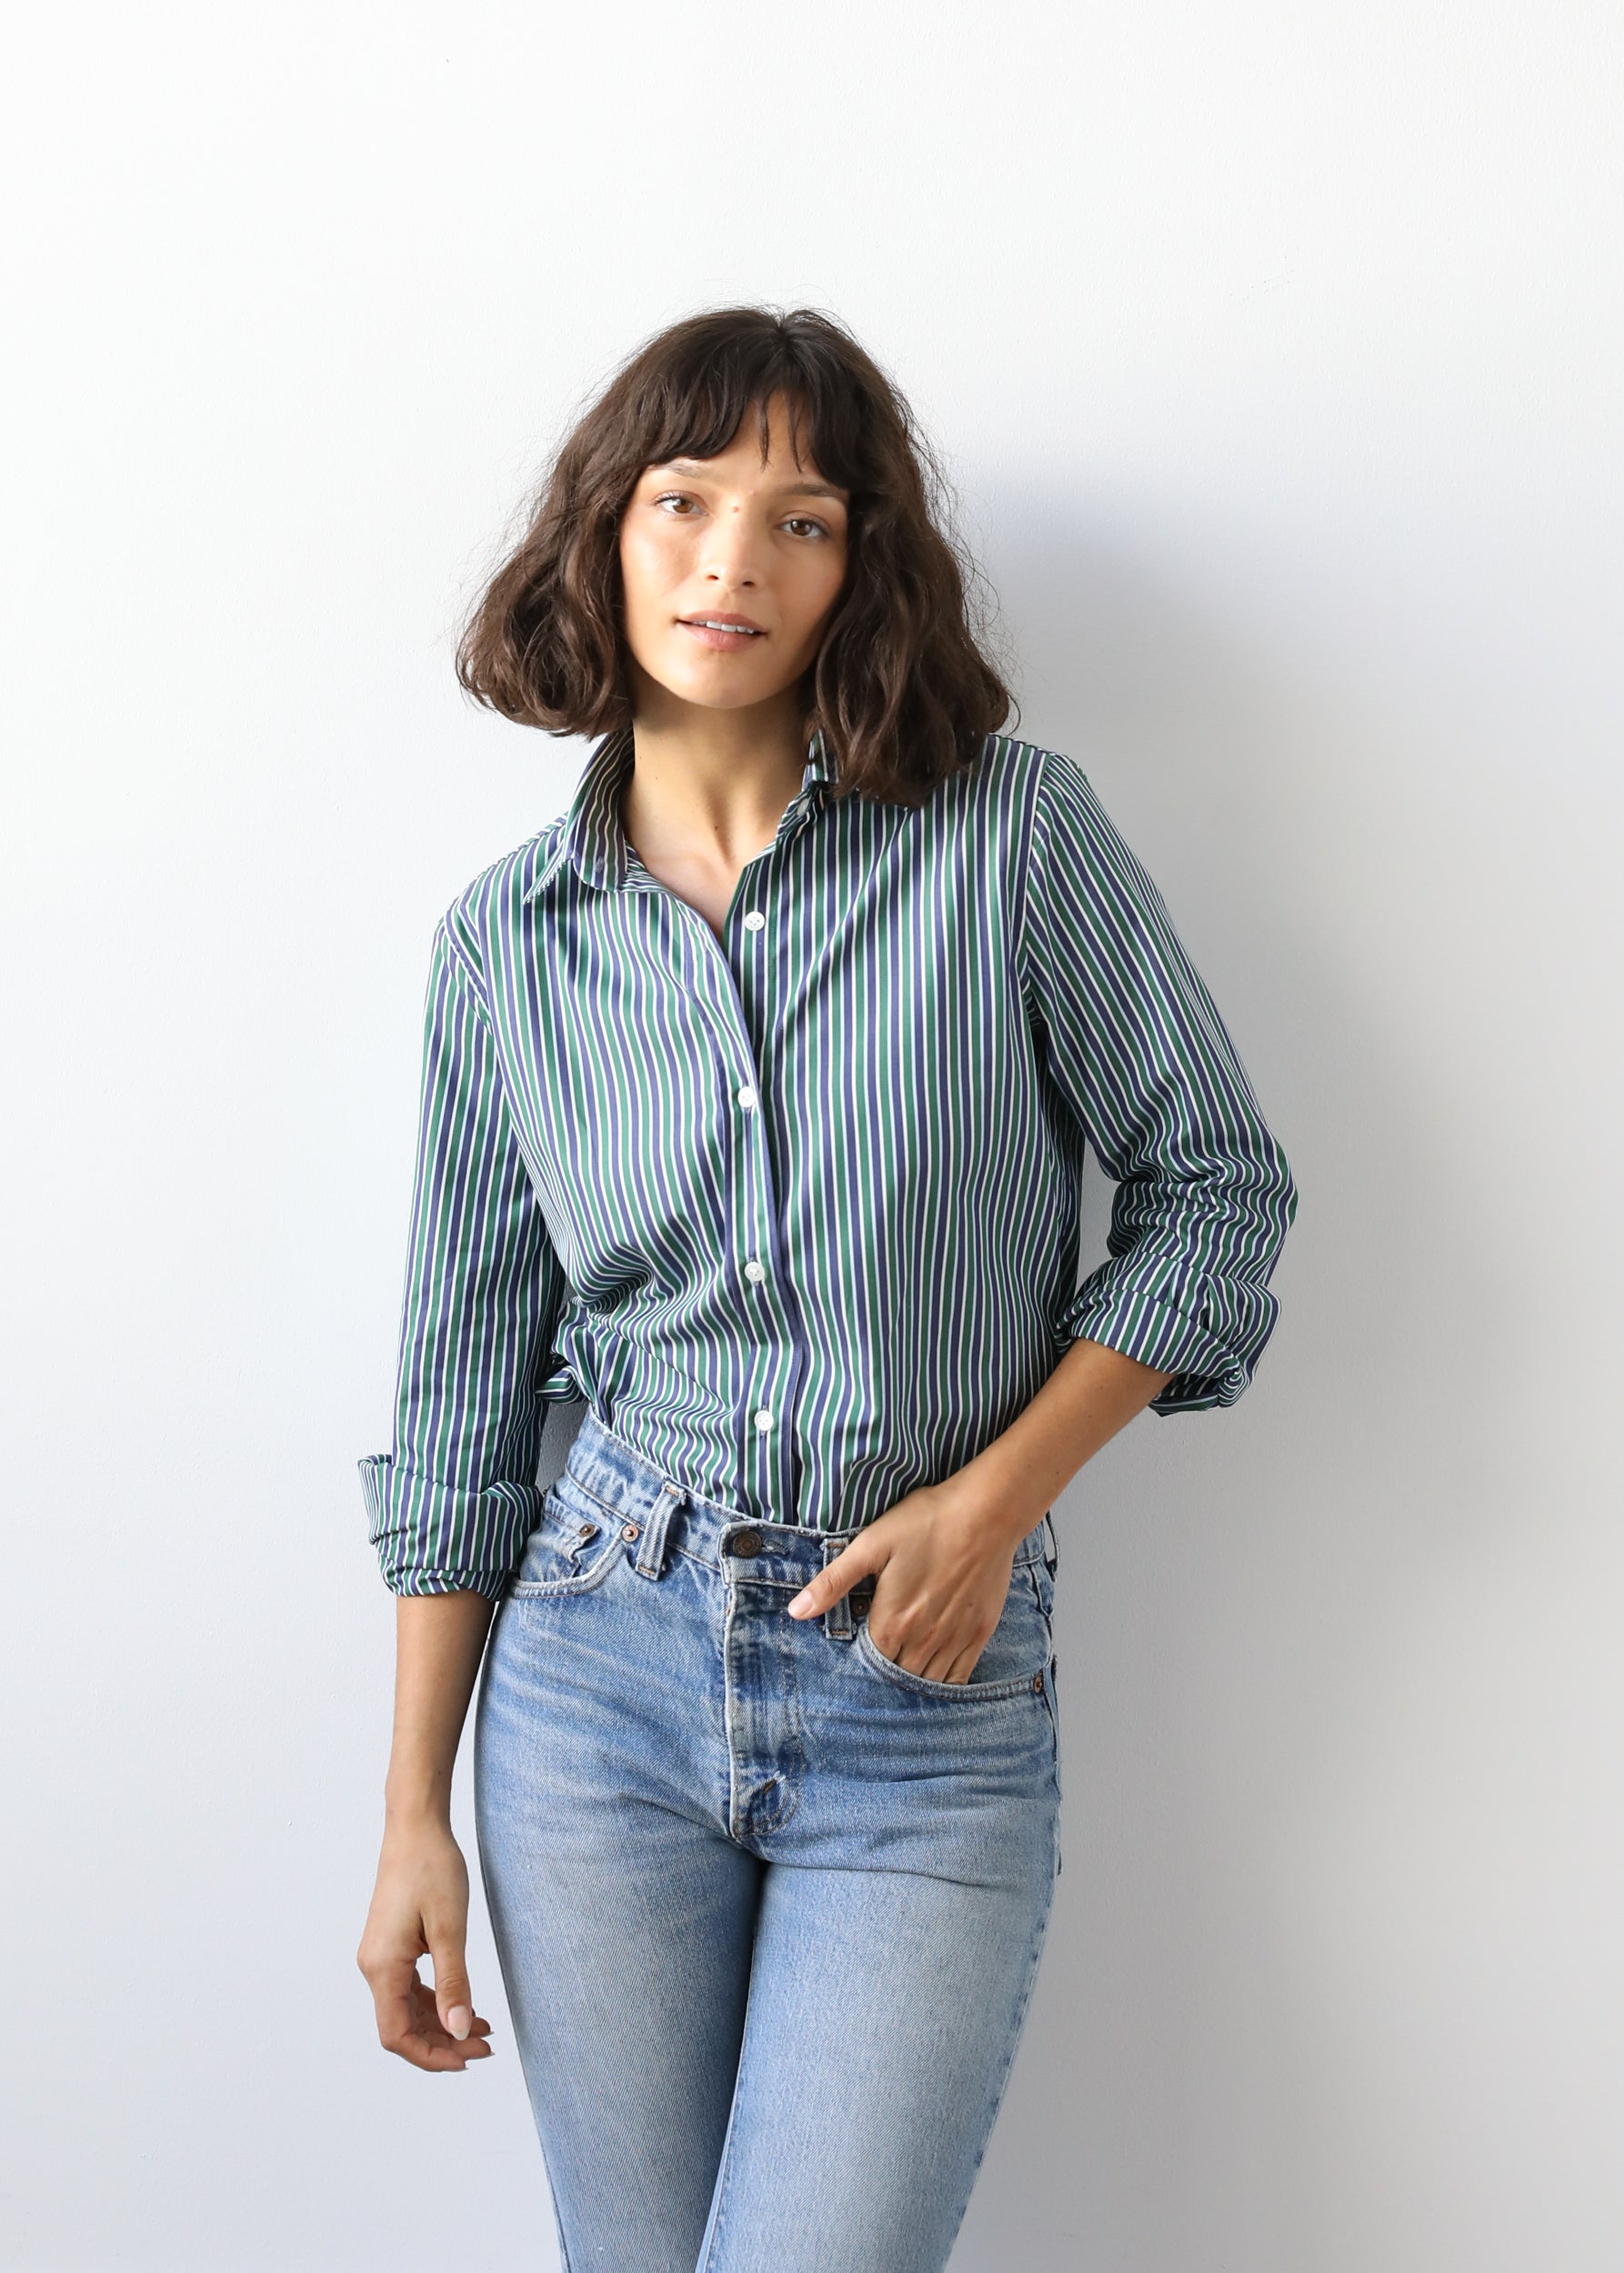 Estella NYC Gemma Button Up Shirt in Pine Stripe Cotton Poplin